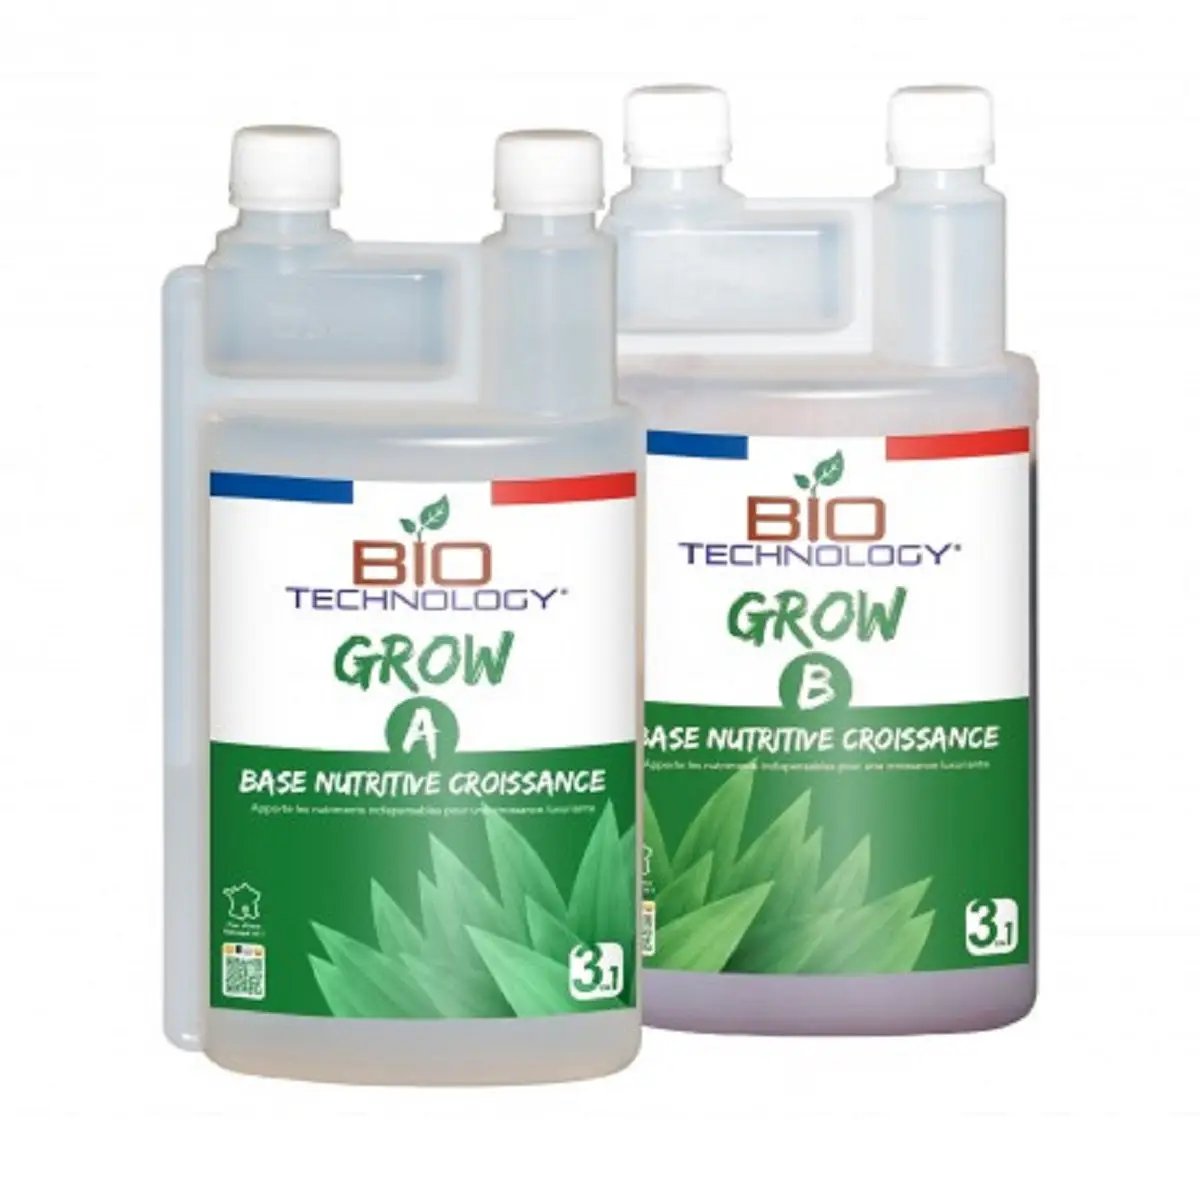 Engrais de croissance Bio Technology Grow A&B 1 litre